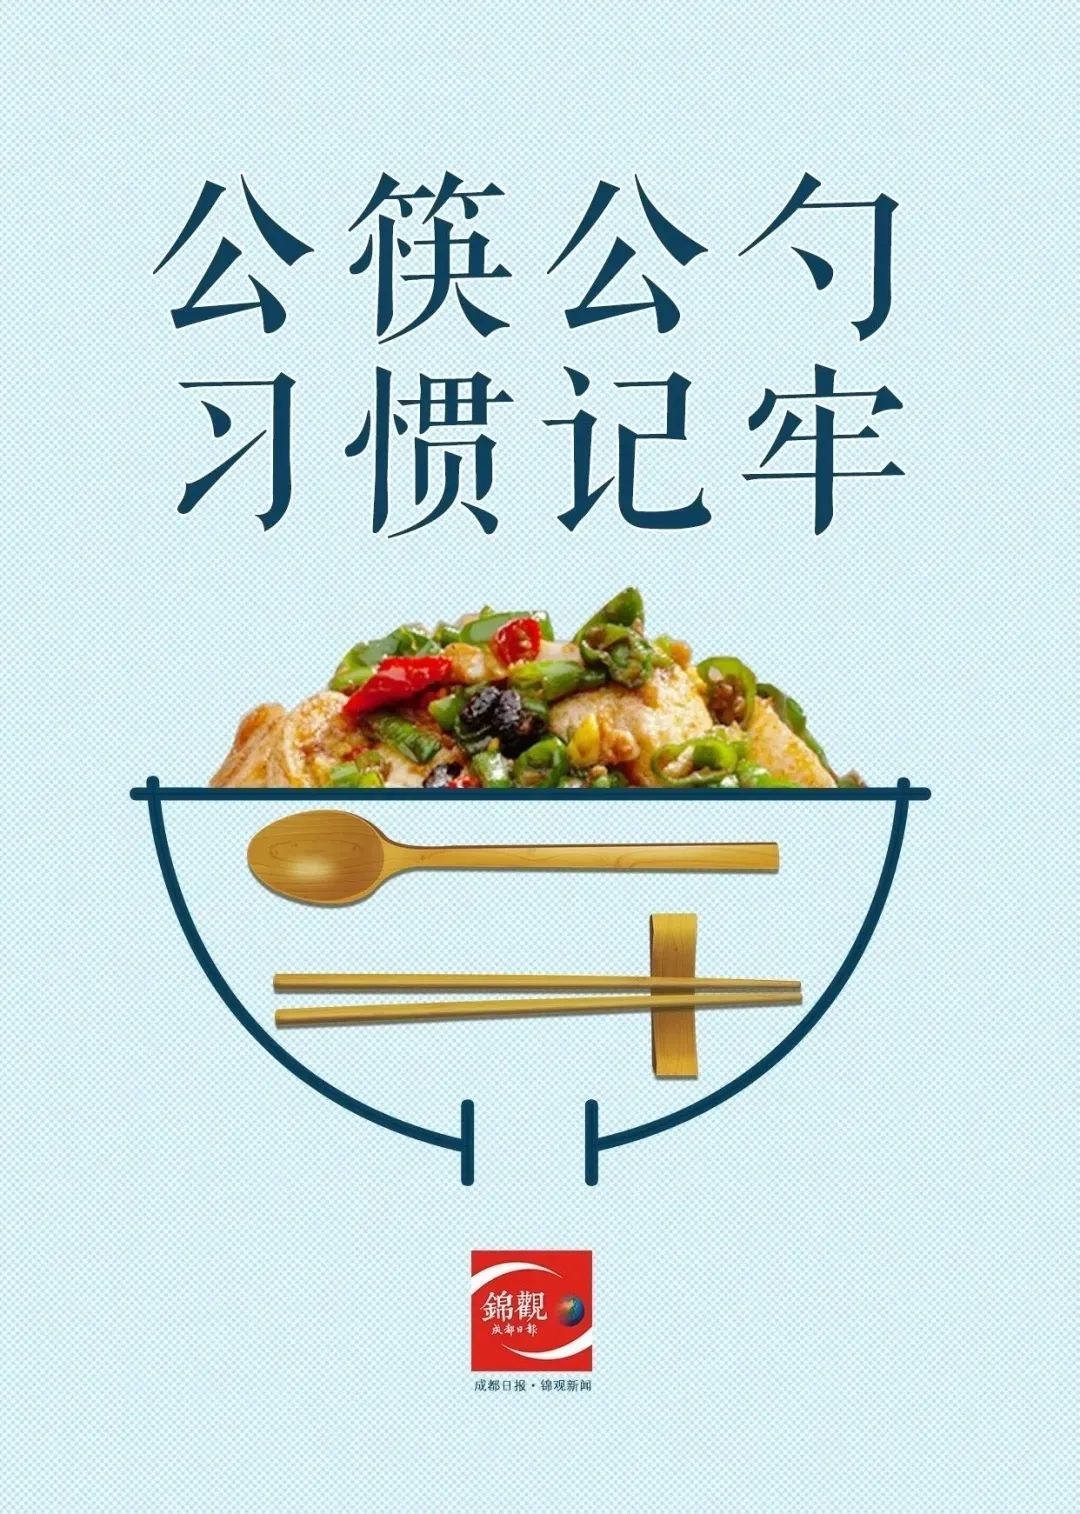 双流区文明餐桌公筷公勺行动倡议书请收下